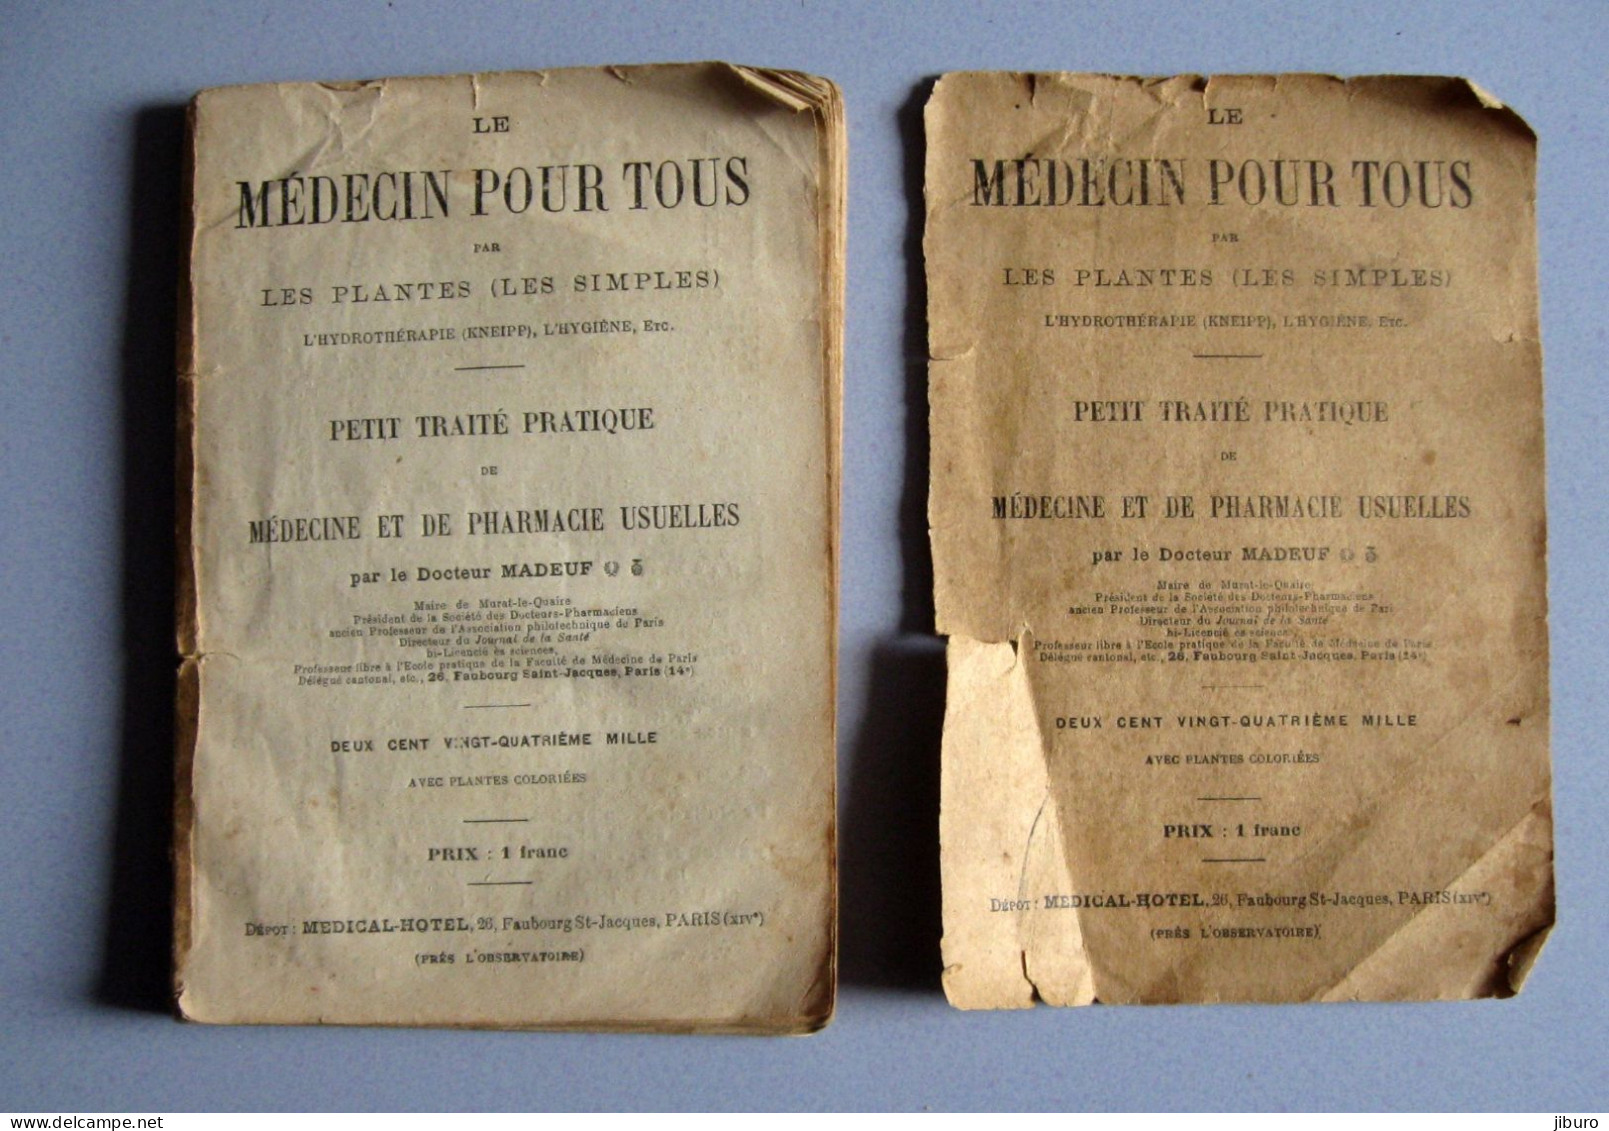 Docteur Mabeuf Livre Le Médecin Pour Tous Médecine Plantes + Gravure Médical-Hôtel 26 Rue Faubourg Saint-Jacques Paris - Santé